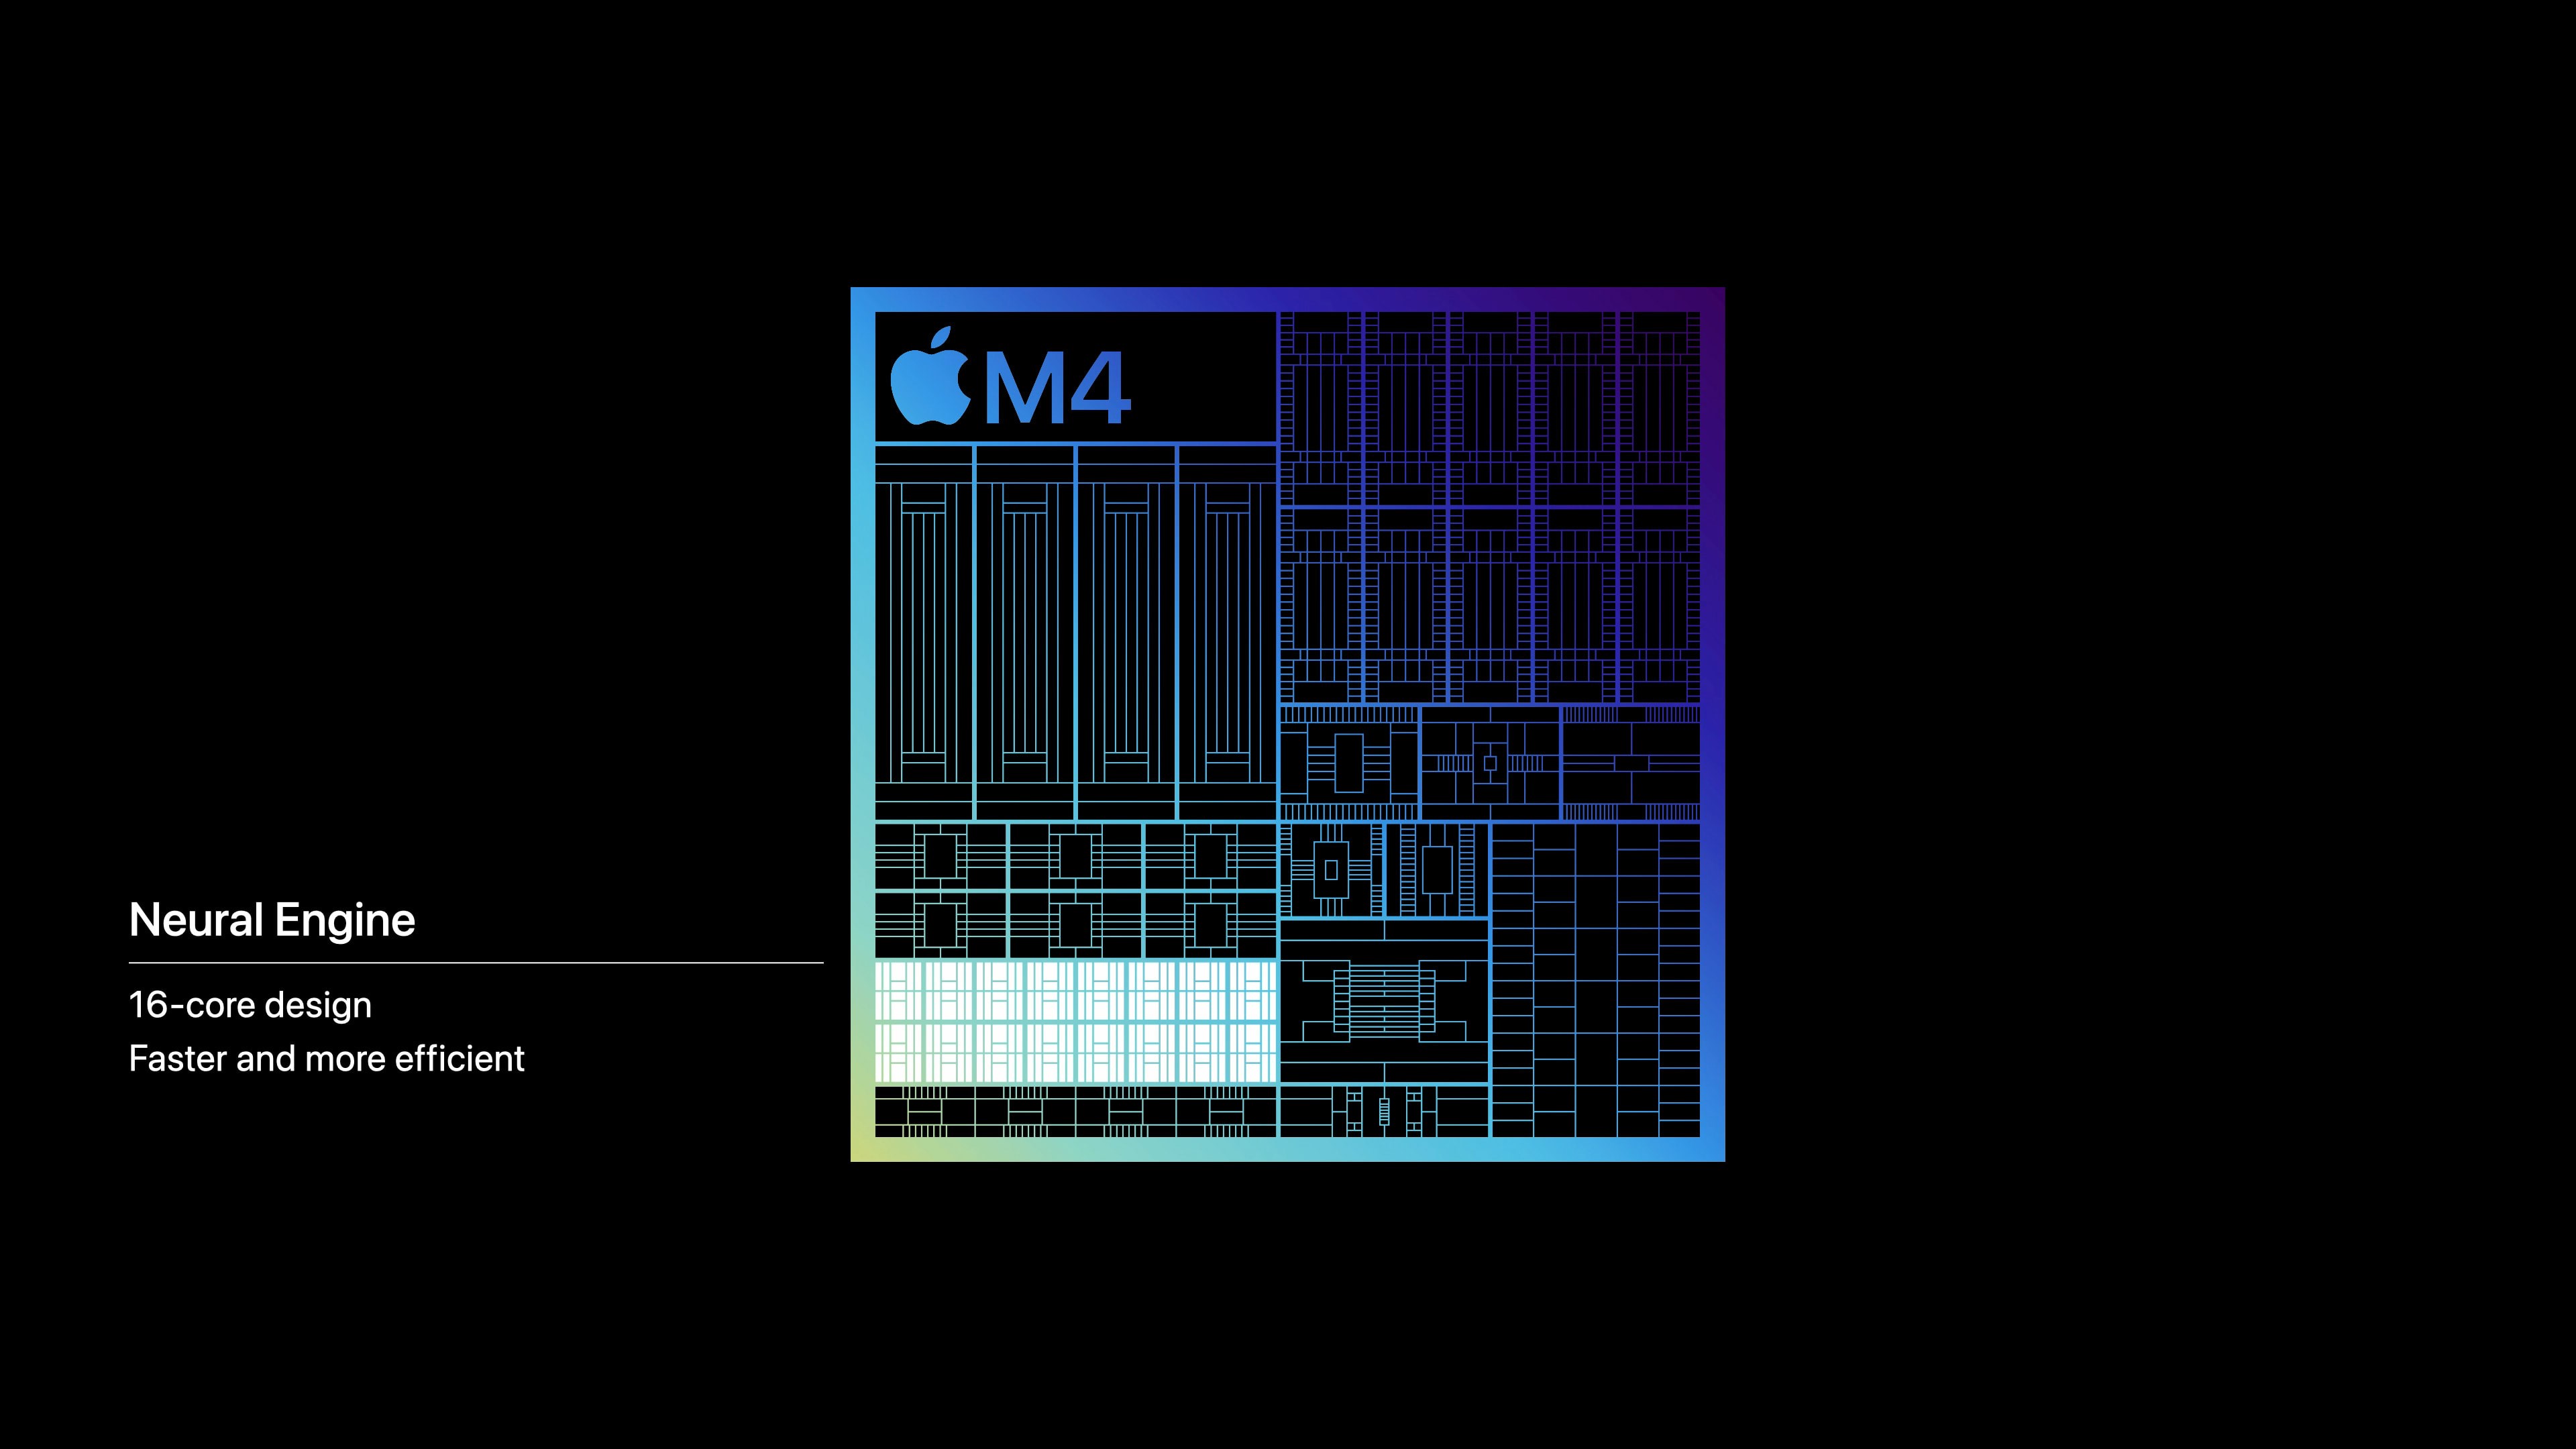 Apple M4 tanıtıldı: İşte özellikleri ve tüm detayları